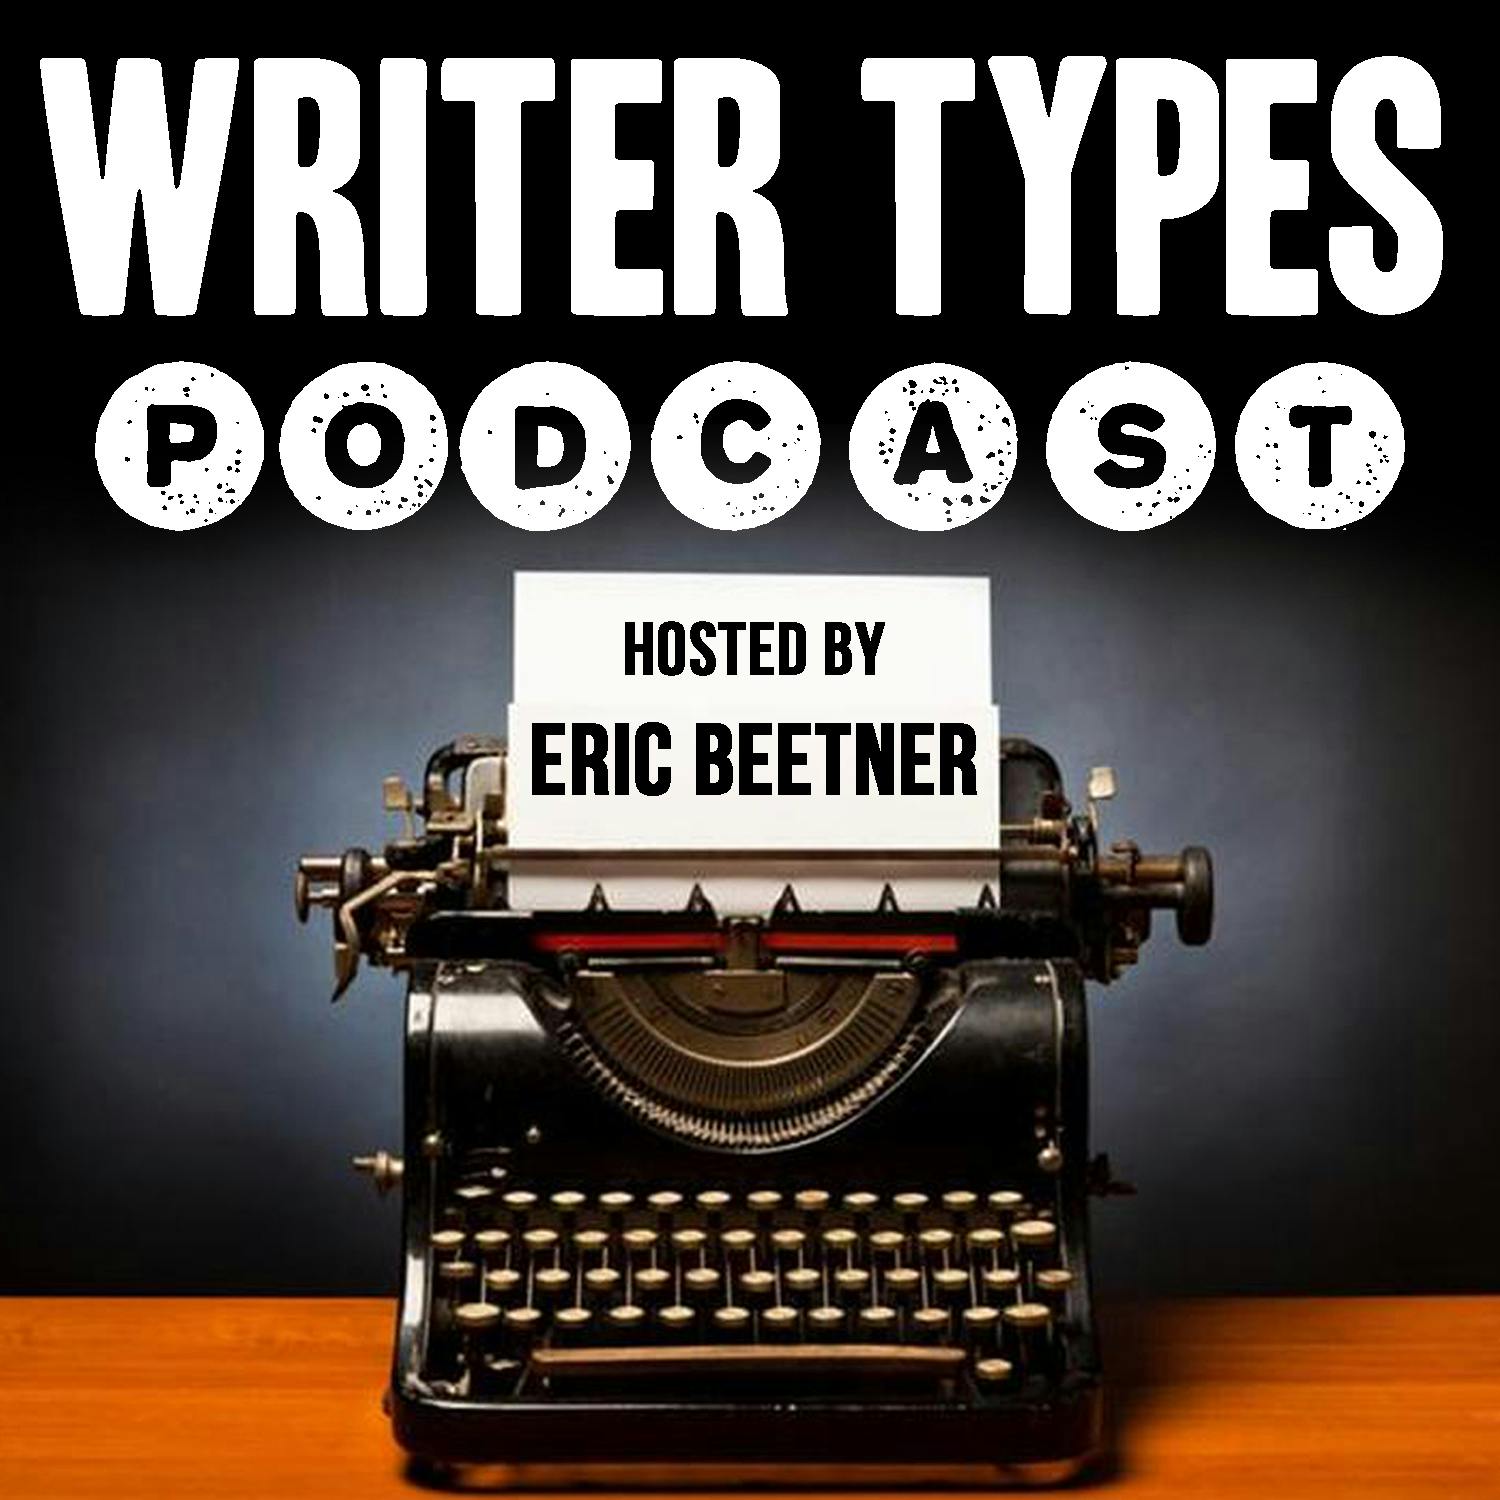 Mini Episode - Eric Beetner Interview!